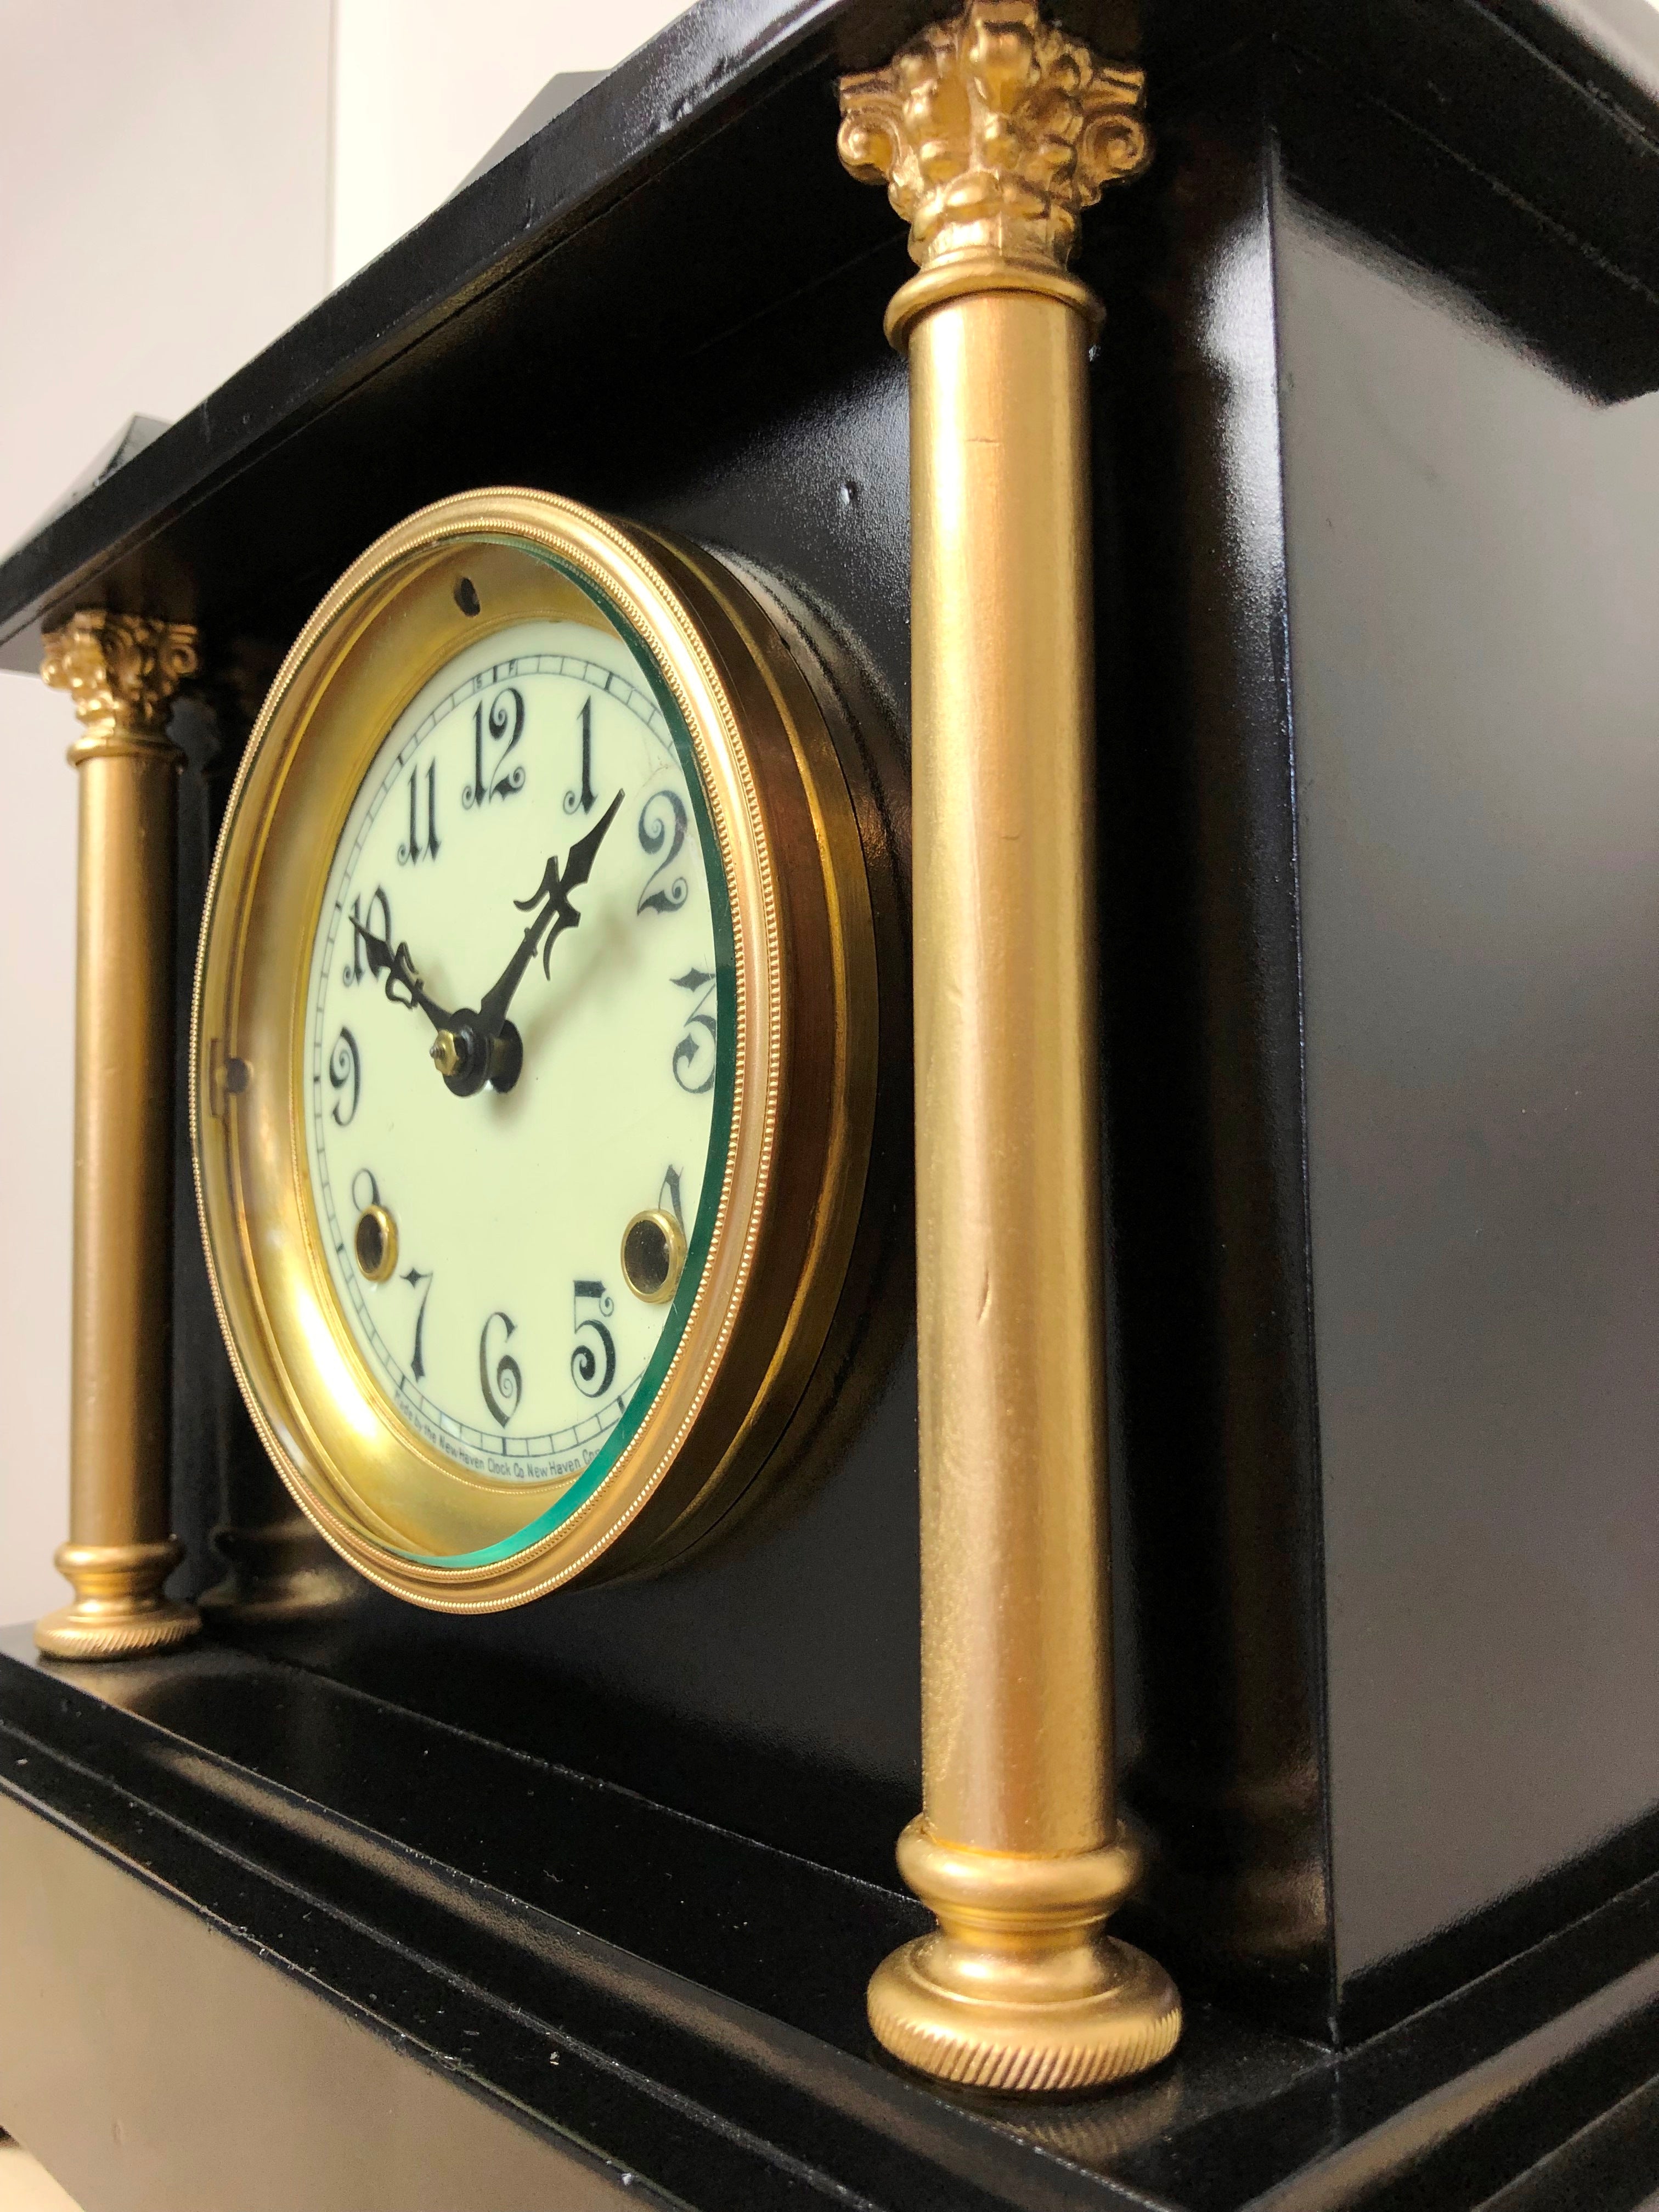 Antique Cast Iron NEW HAVEN U.S.A Mantel Clock | eXibit collection